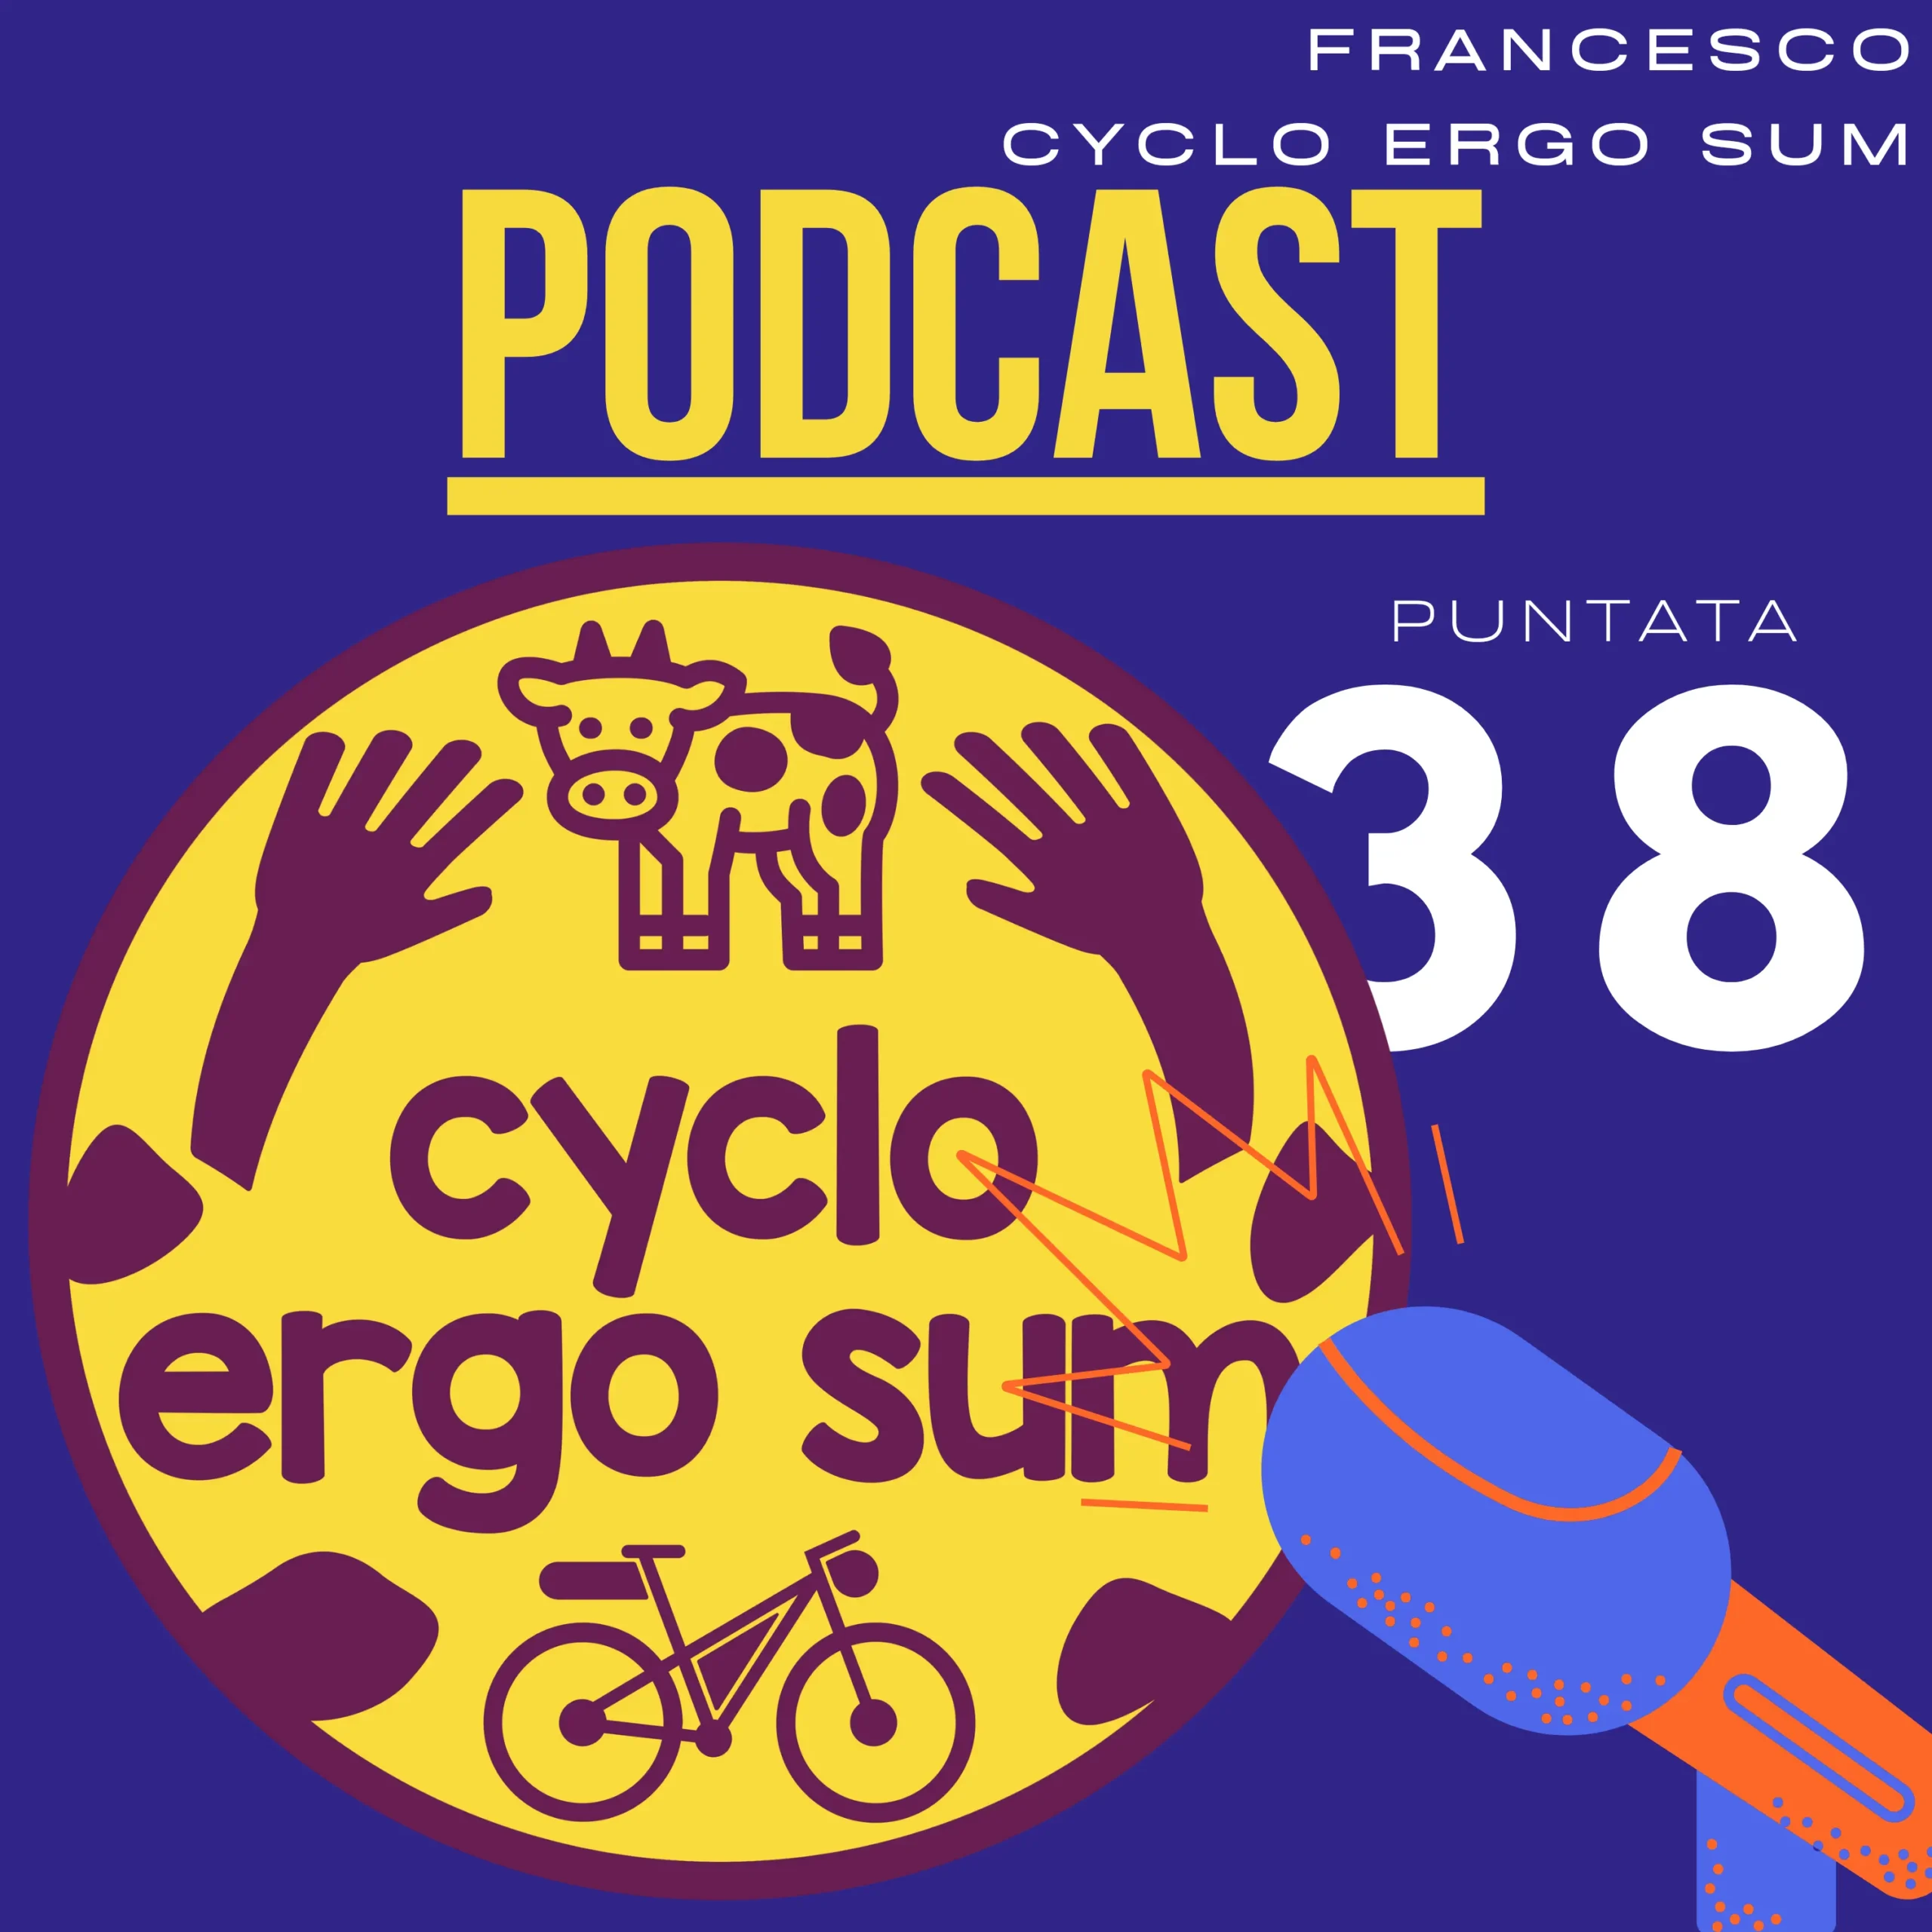 Cyclo Ergo Sum Progetti | il podcast di Cyclo Ergo Sum